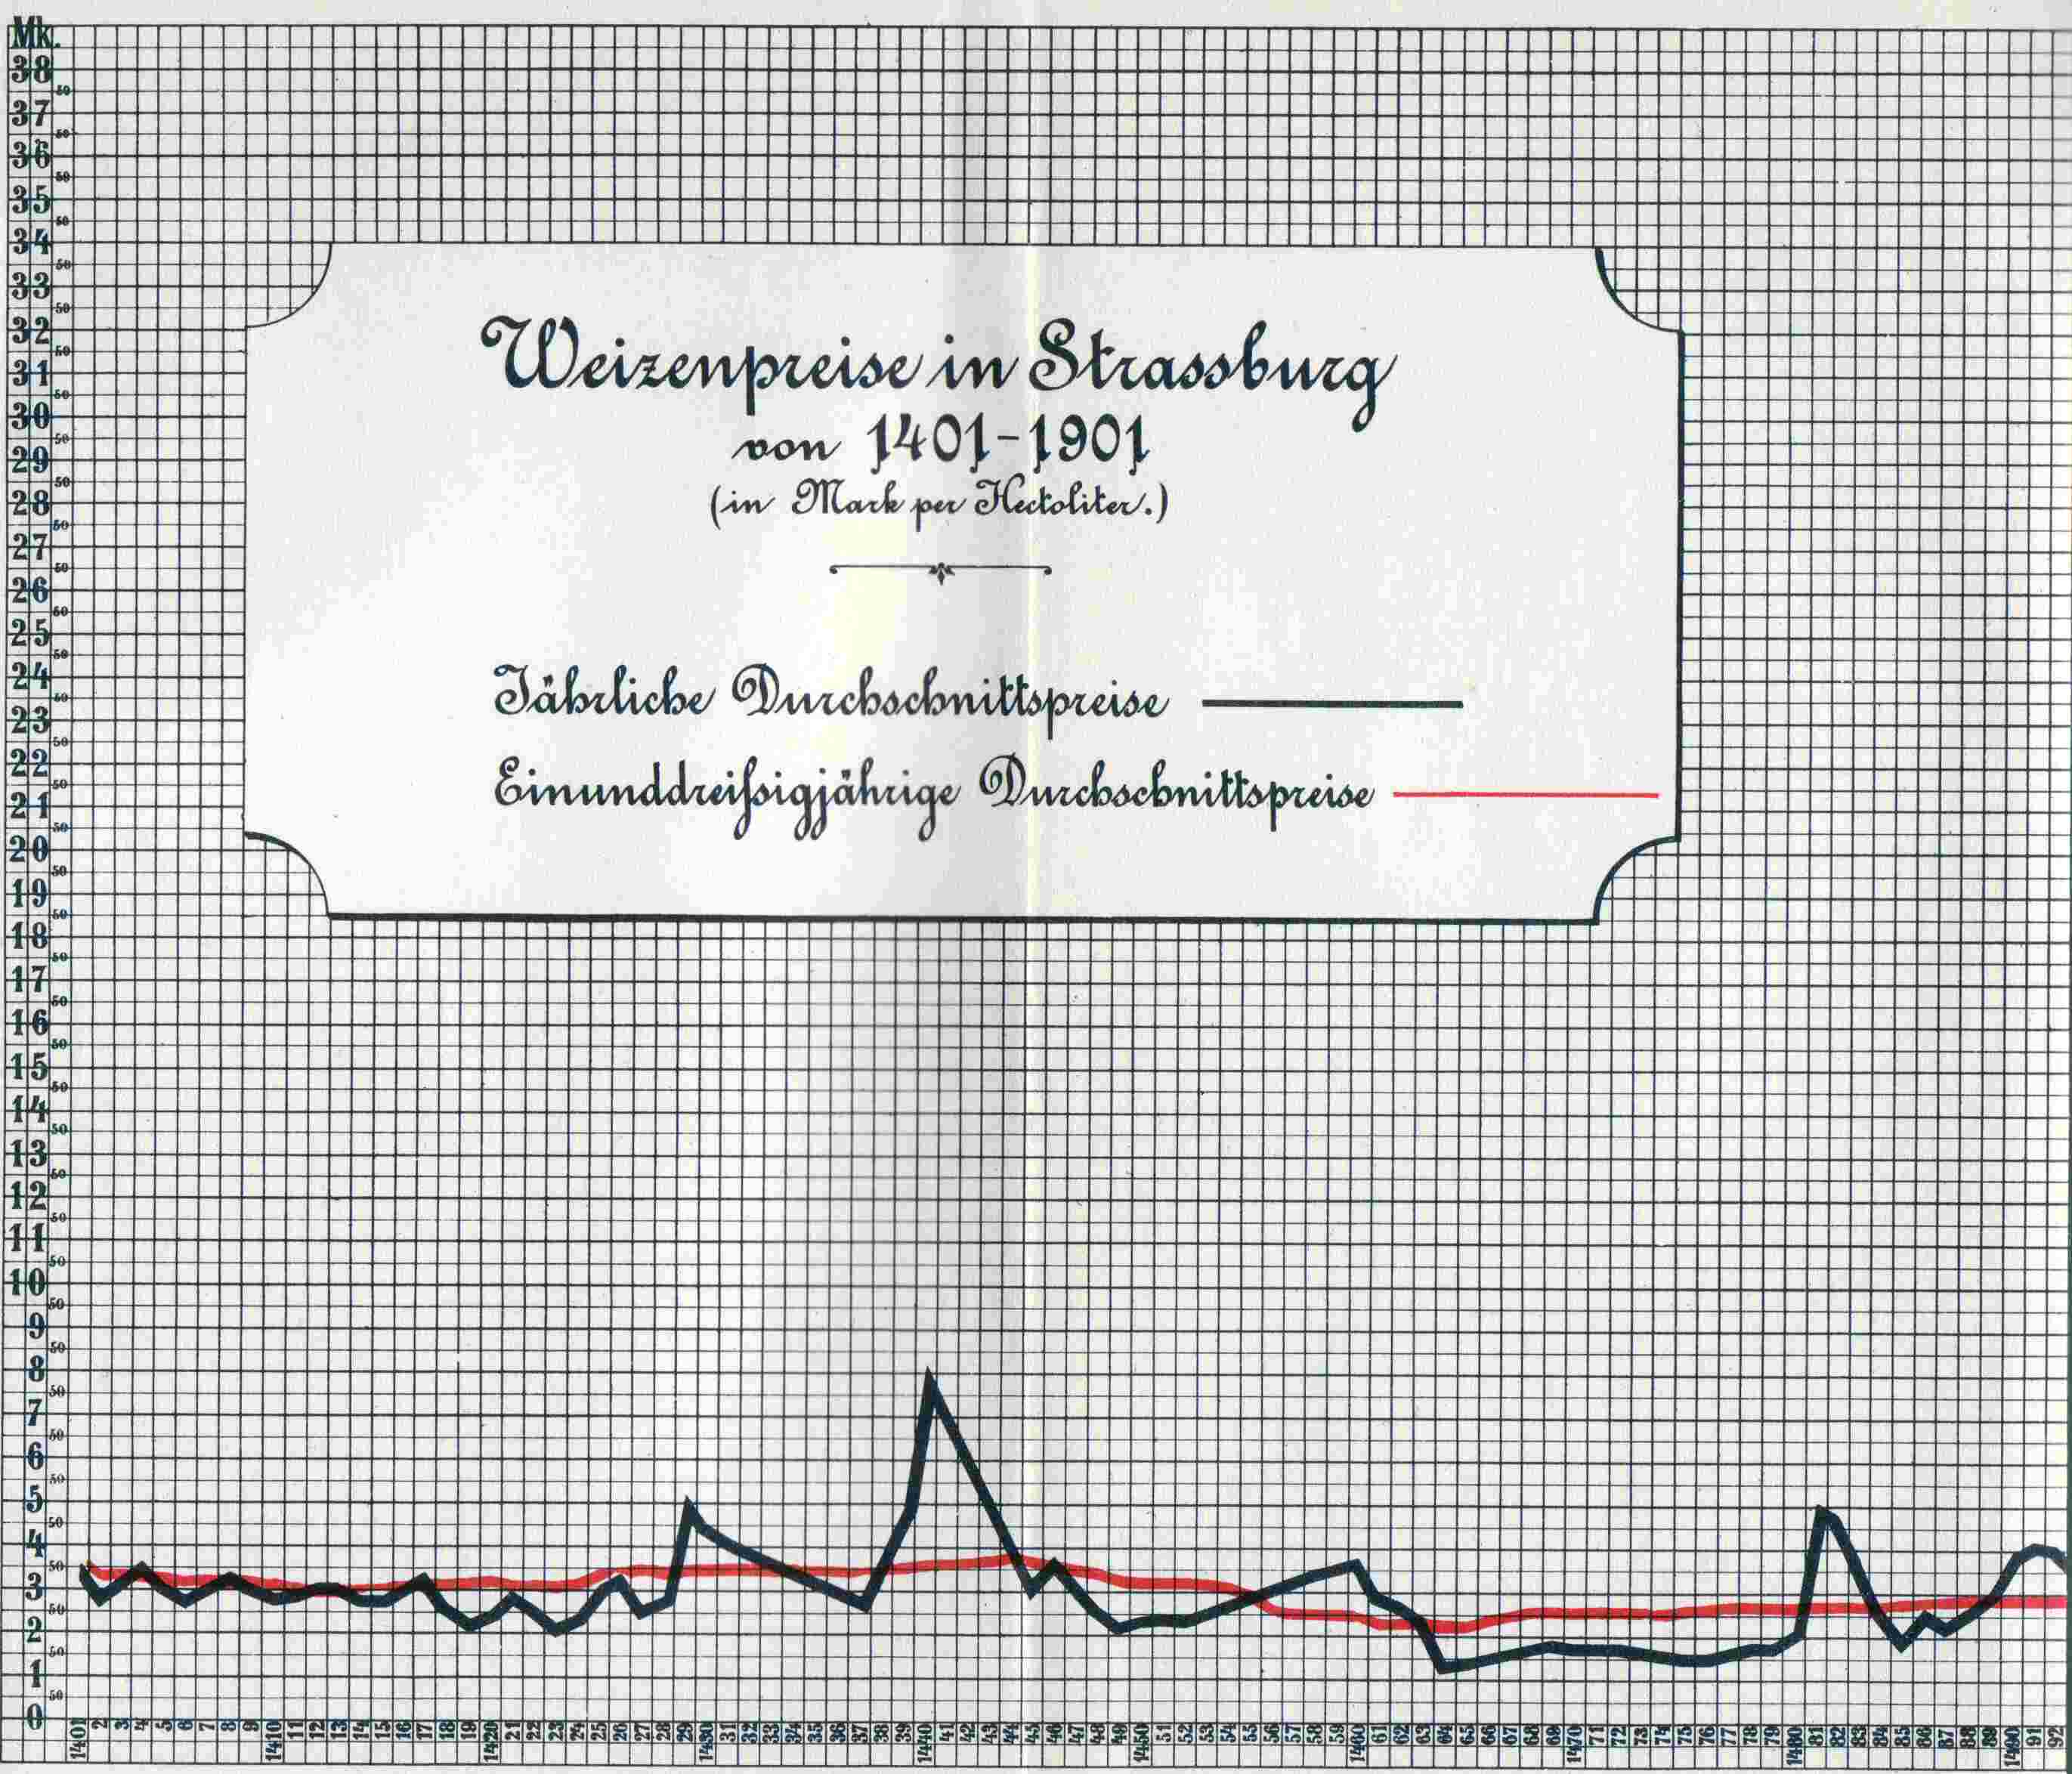 Darstellung der Weizenpreise in Strassburg von 1401 - 1901 Teil 1